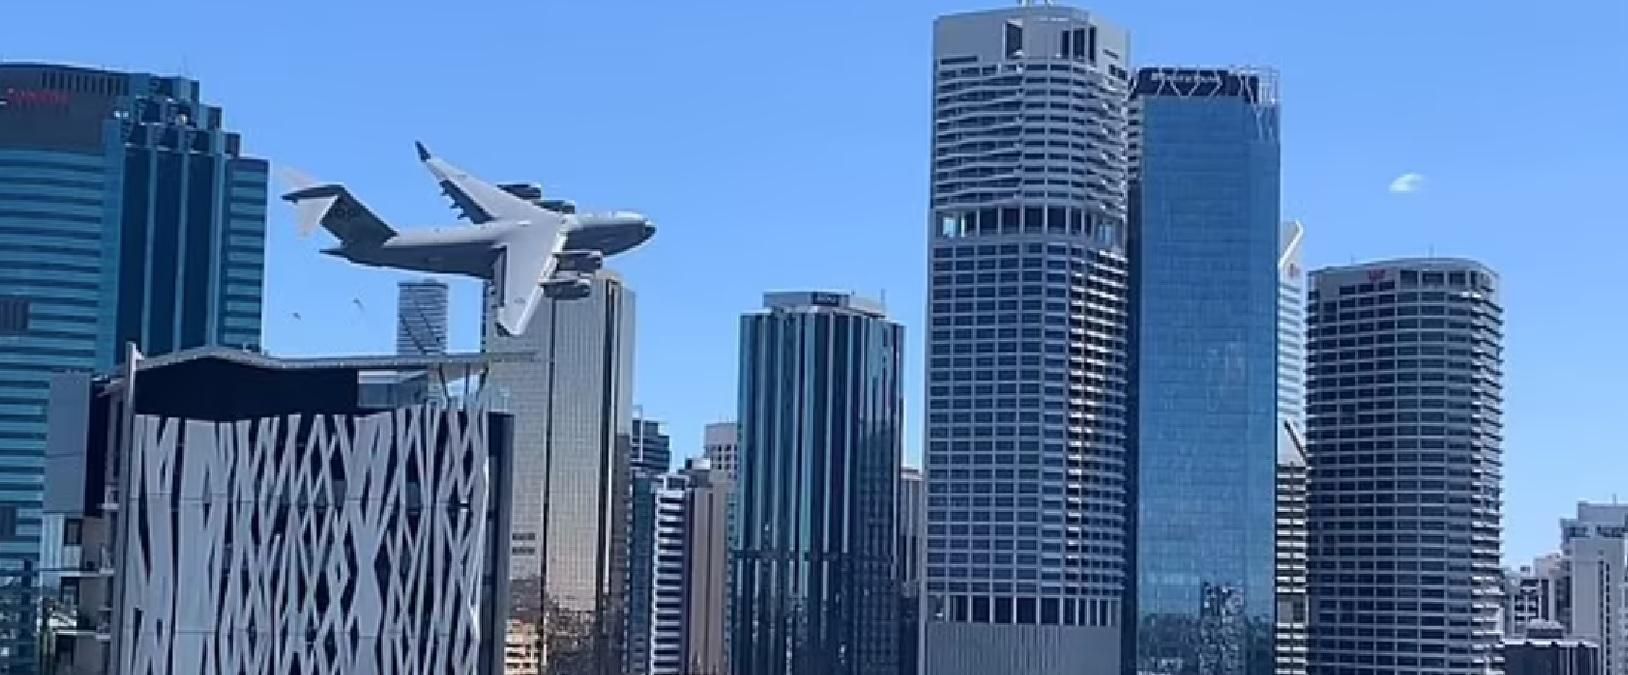 Полоскотав нерви очевидцям: в Австралії літак пронісся між хмарочосами - вражаюче відео - 24 Канал